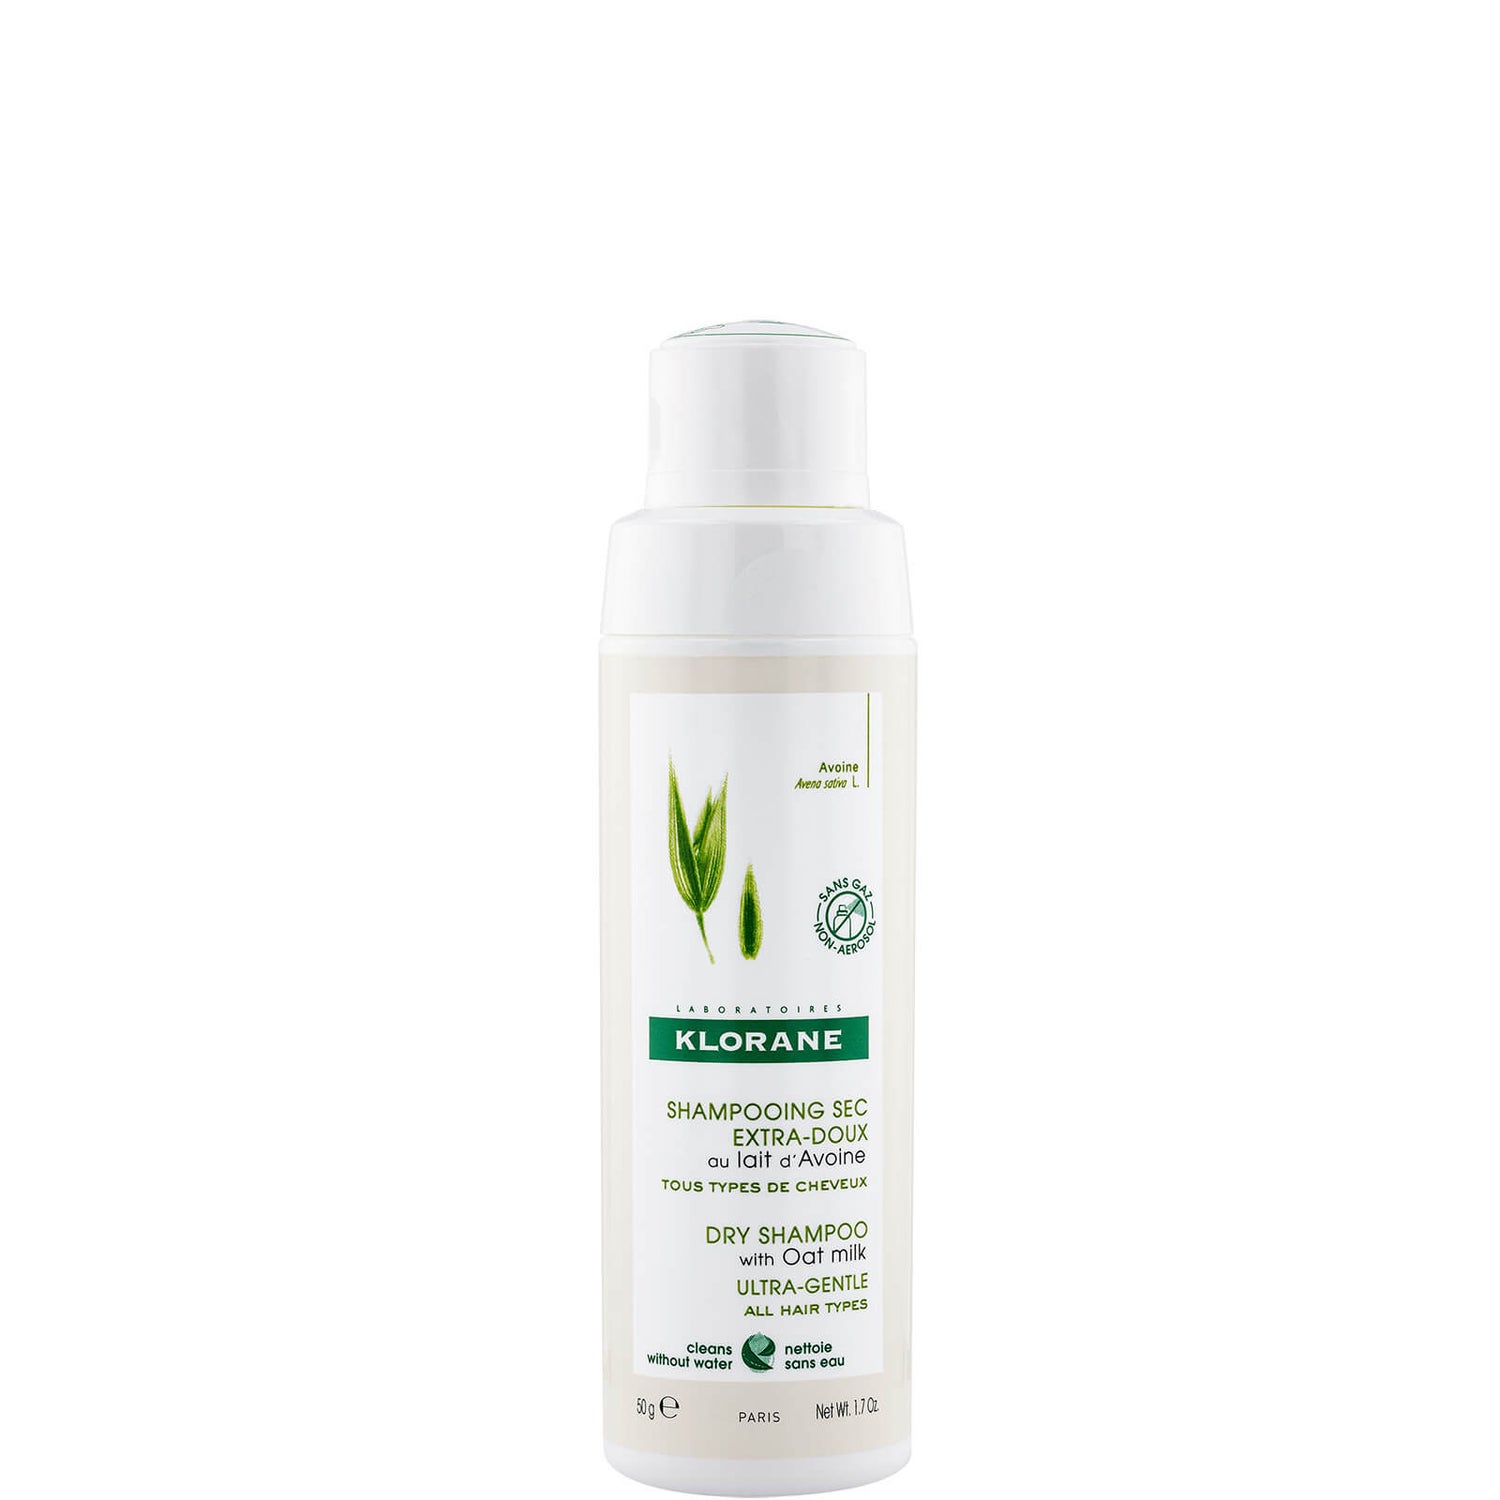 Ekologický suchý šampon KLORANE s ovesným mlékem pro všechny typy vlasů 50g